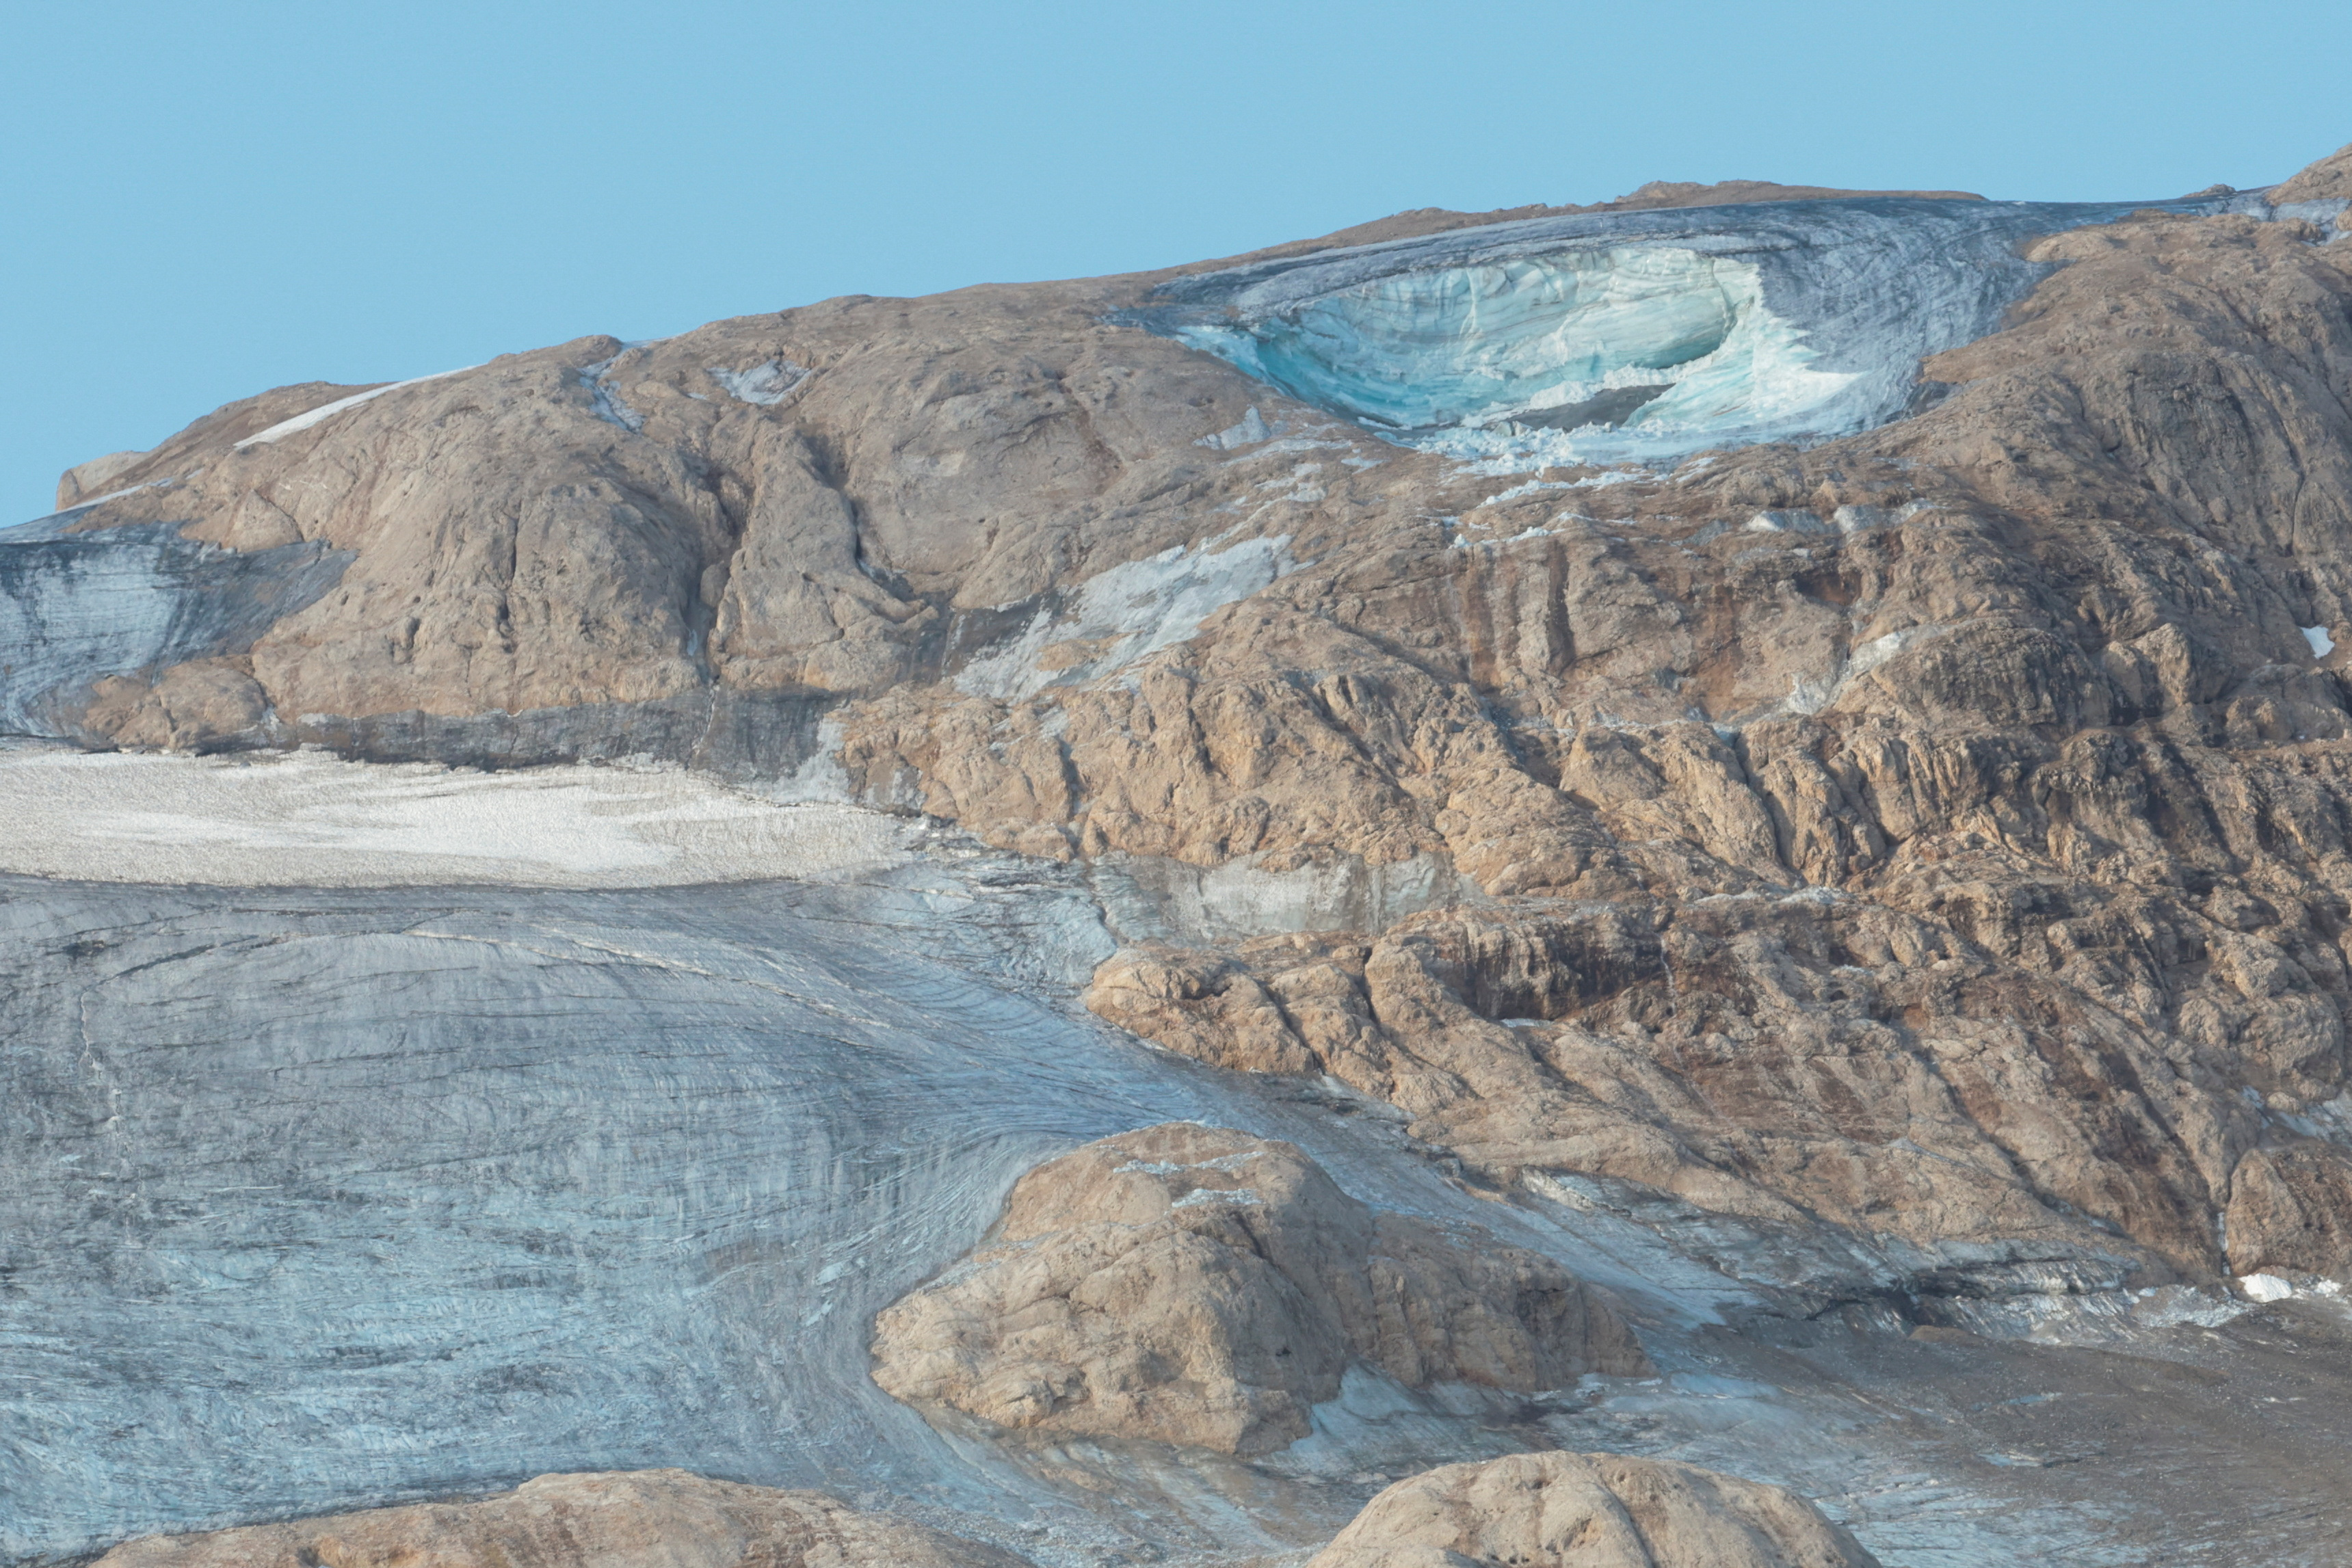 El glaciar se derrumbó cerca de la localidad de Punta Rocca, en el trayecto habitual para llegar a su cumbre. Técnicamente se trata de un serac, es decir, un enorme bloque que tal vez estuvo allí durante siglos y que terminó en el valle desmoronándose en una carrera sin obstáculos. (REUTERS/Borut Zivulovic)